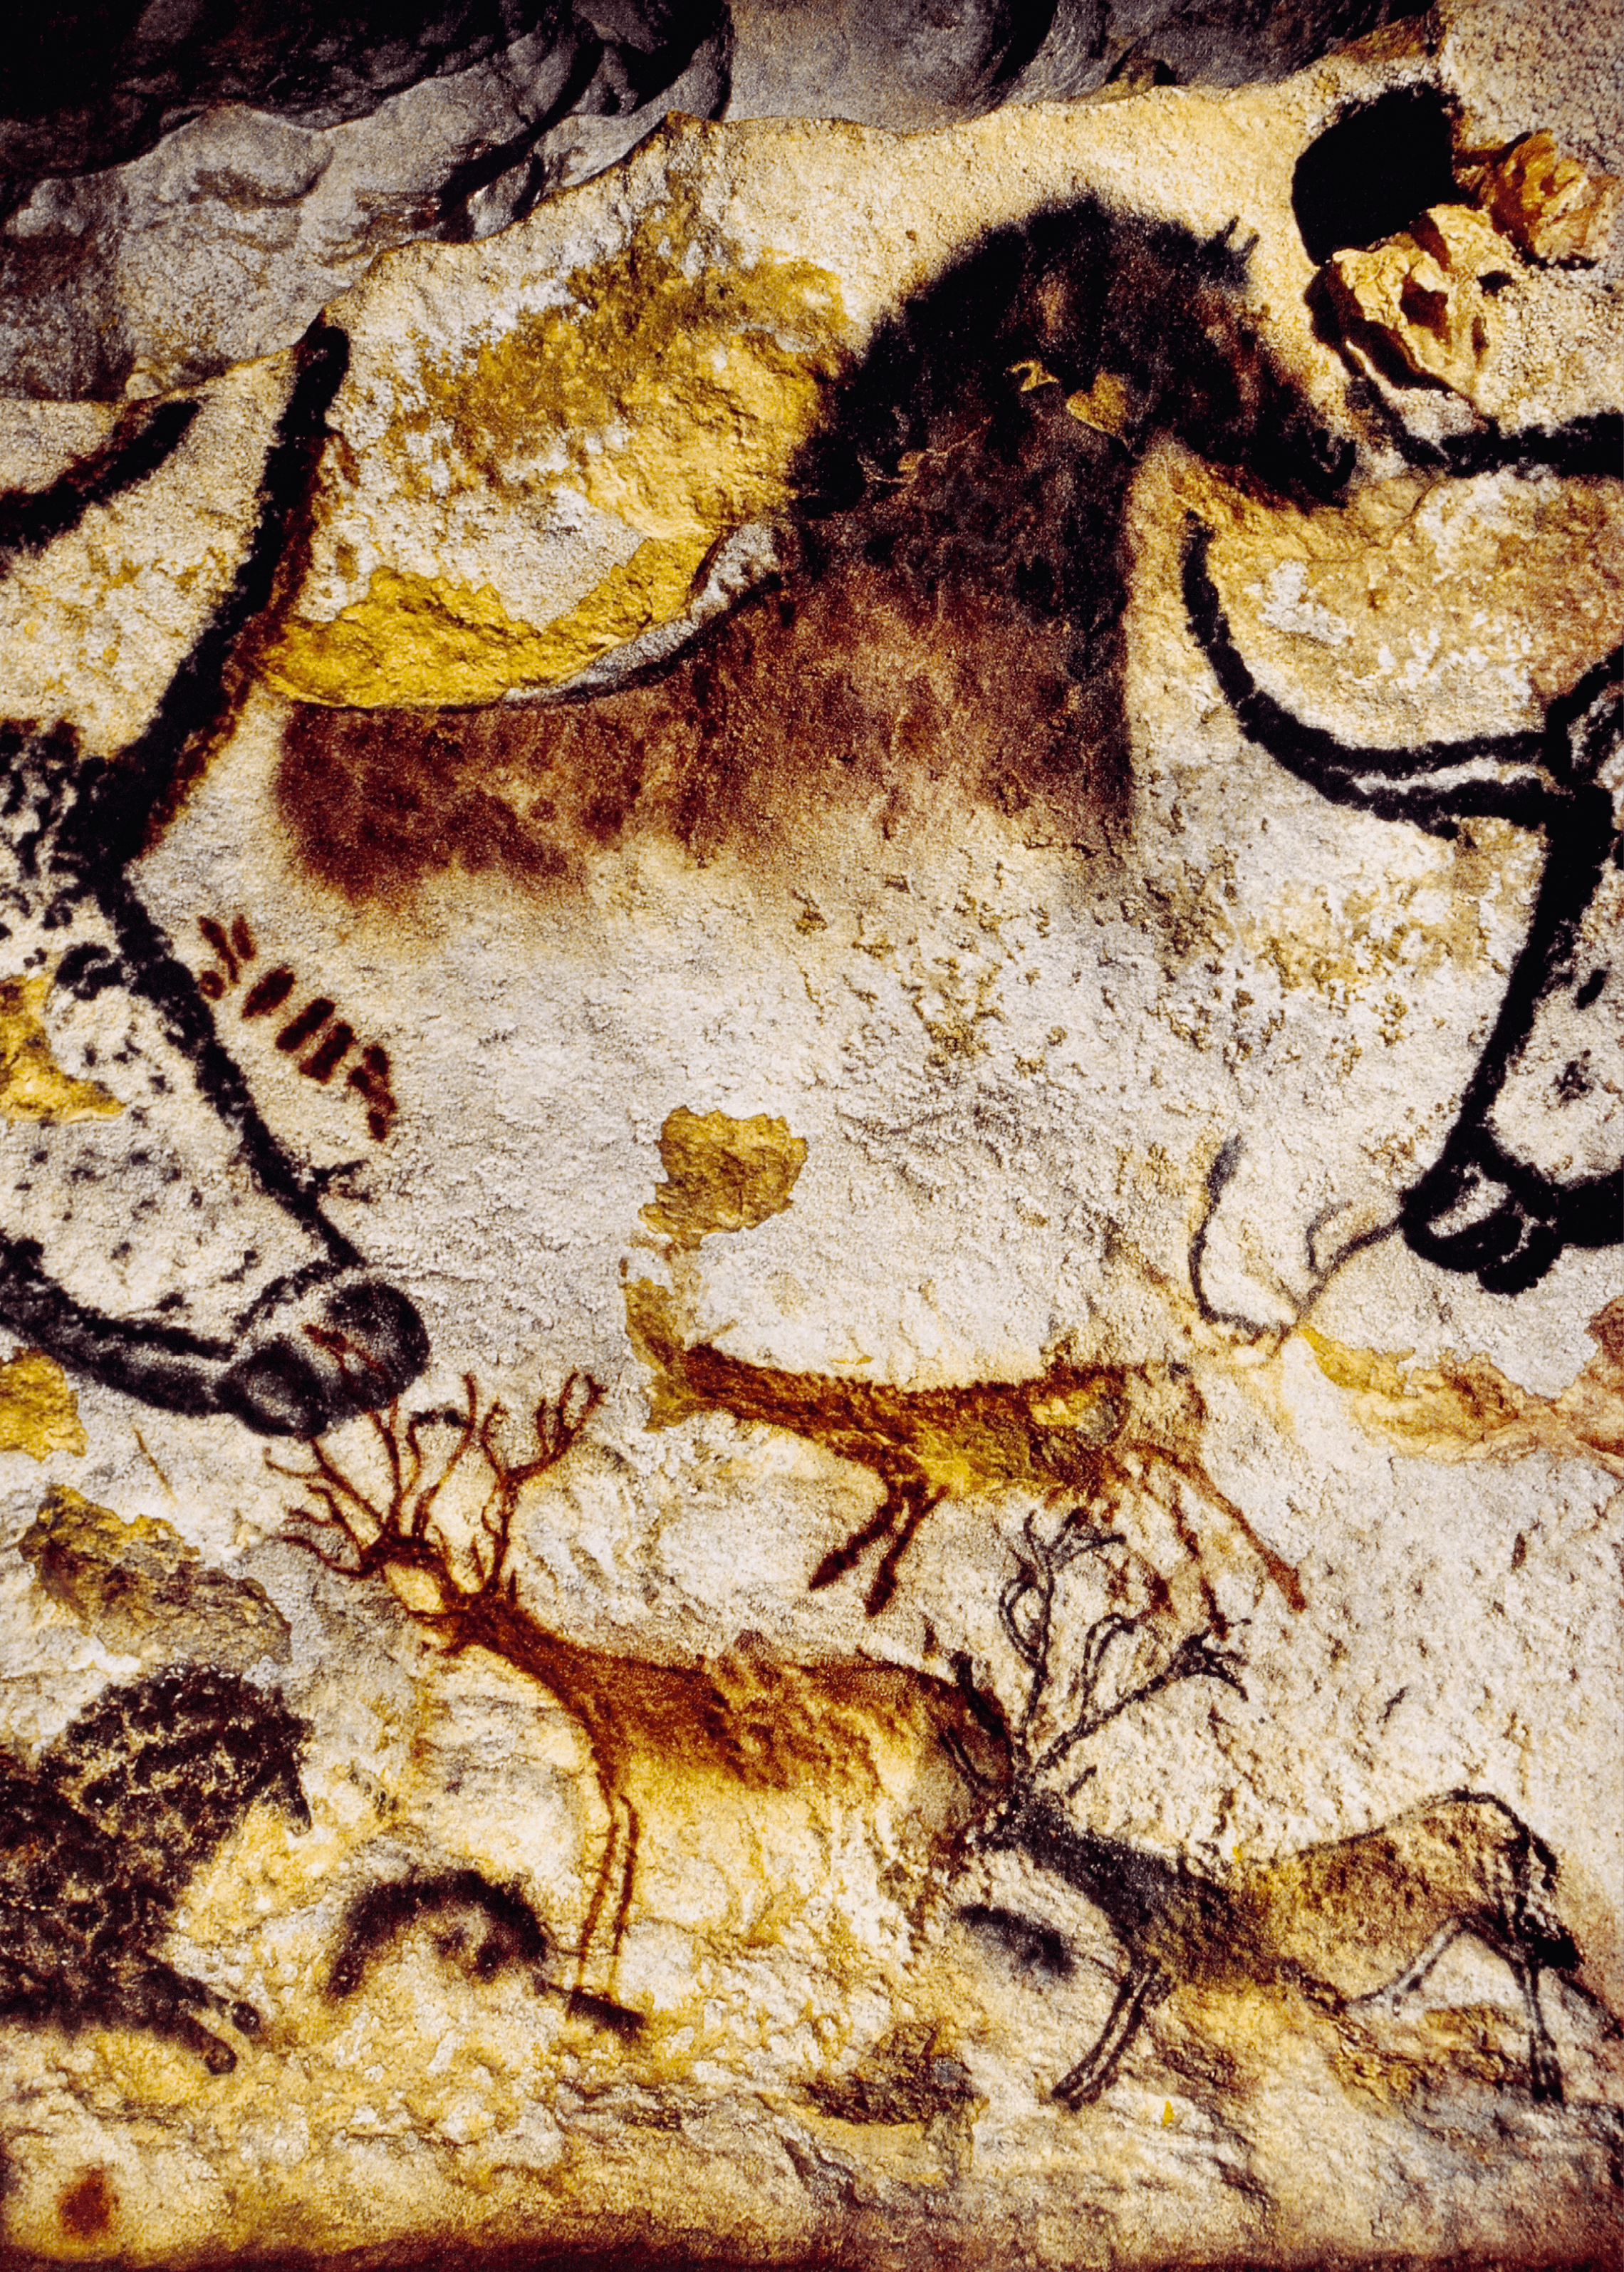 Peintures rupestres dans les grottes de Lascaux datant du Paléolithique supérieur